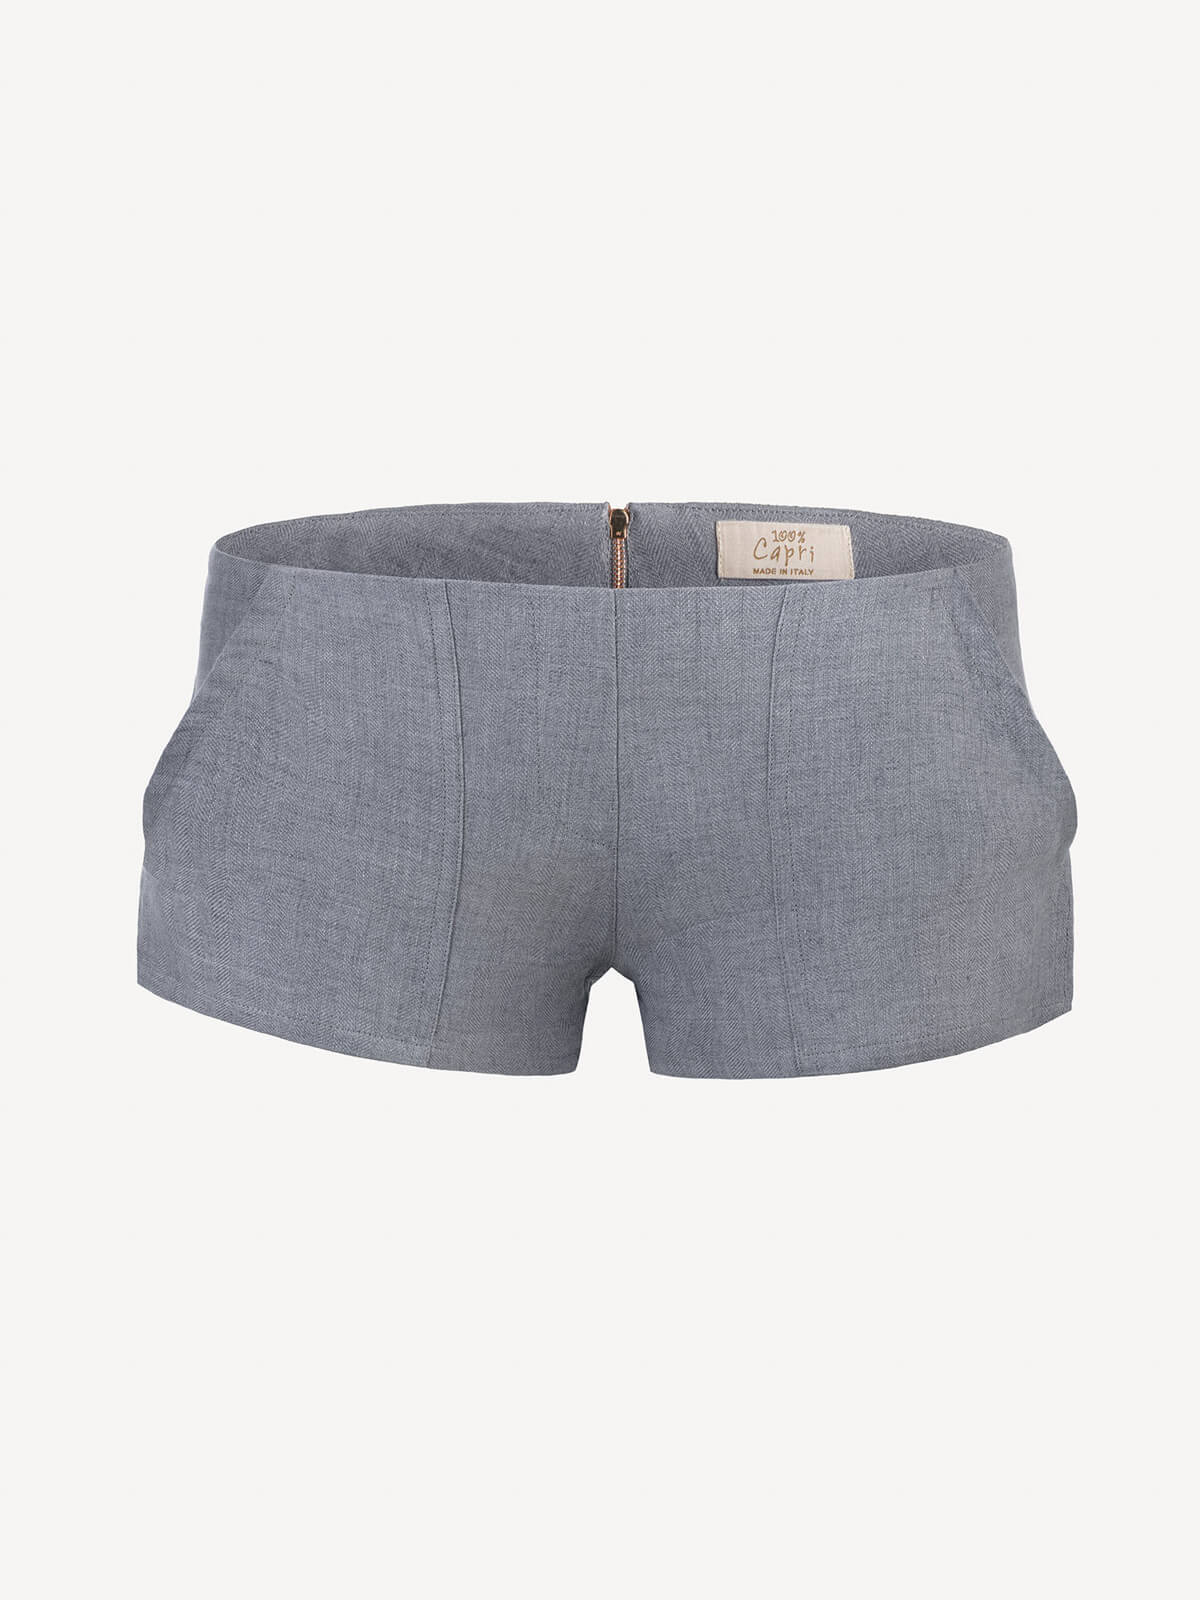 Short linen pants zip  for woman 100% Capri dark grey linen pant front